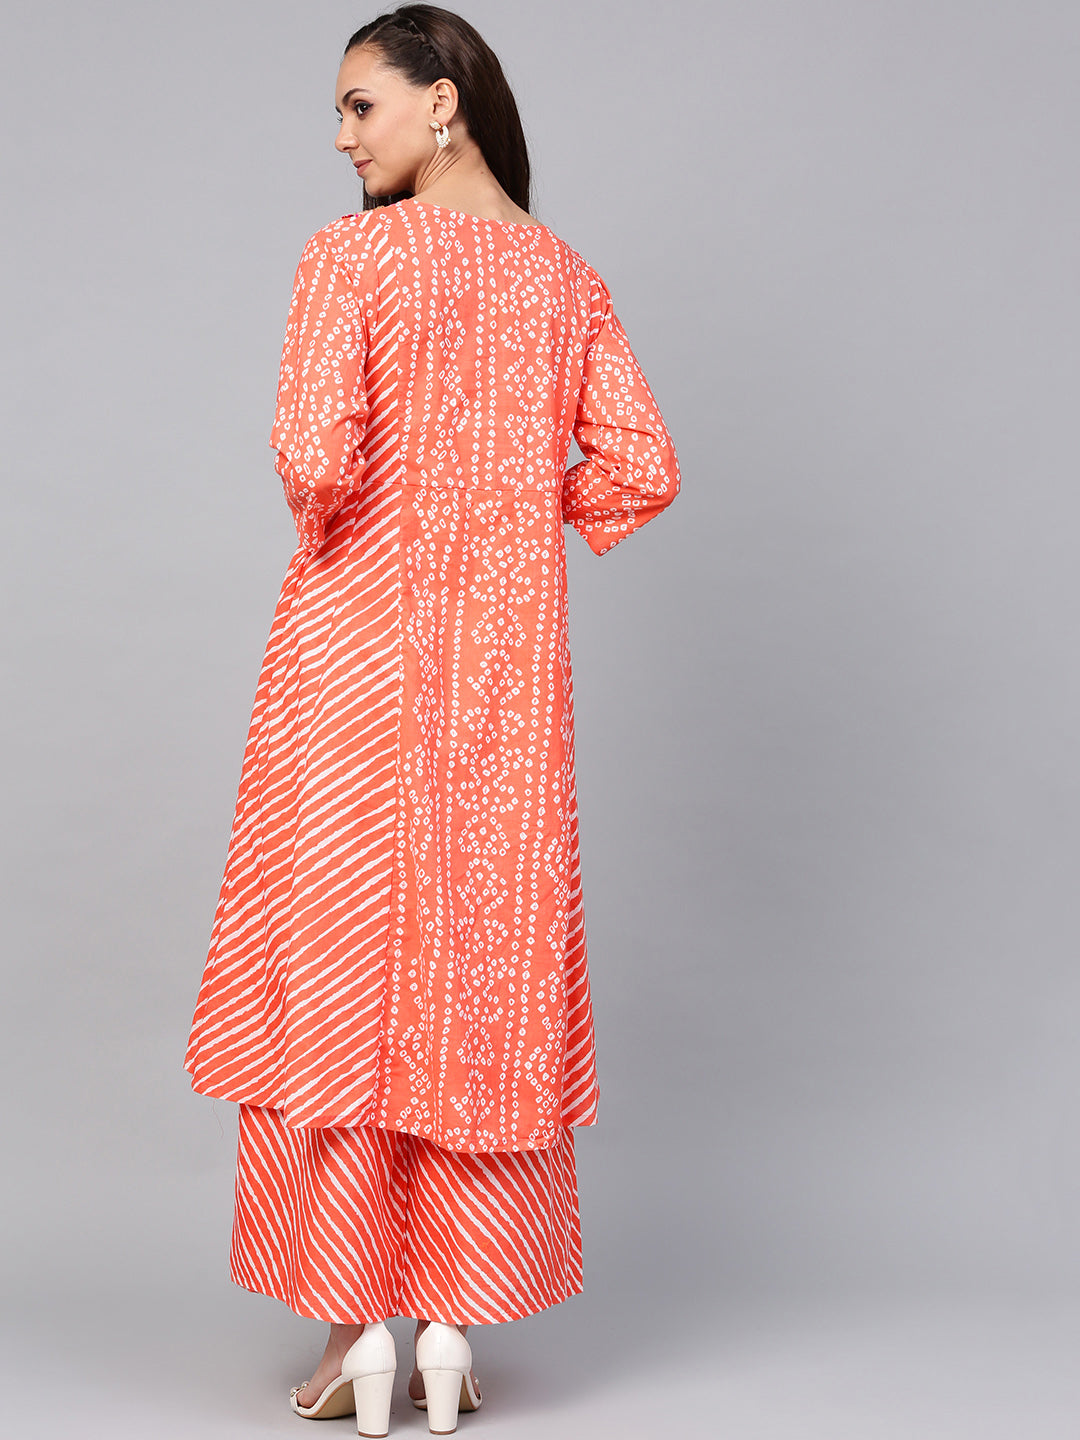 Bhama Couture Orange Bandhej Lace Work Kurta With Palazzos.